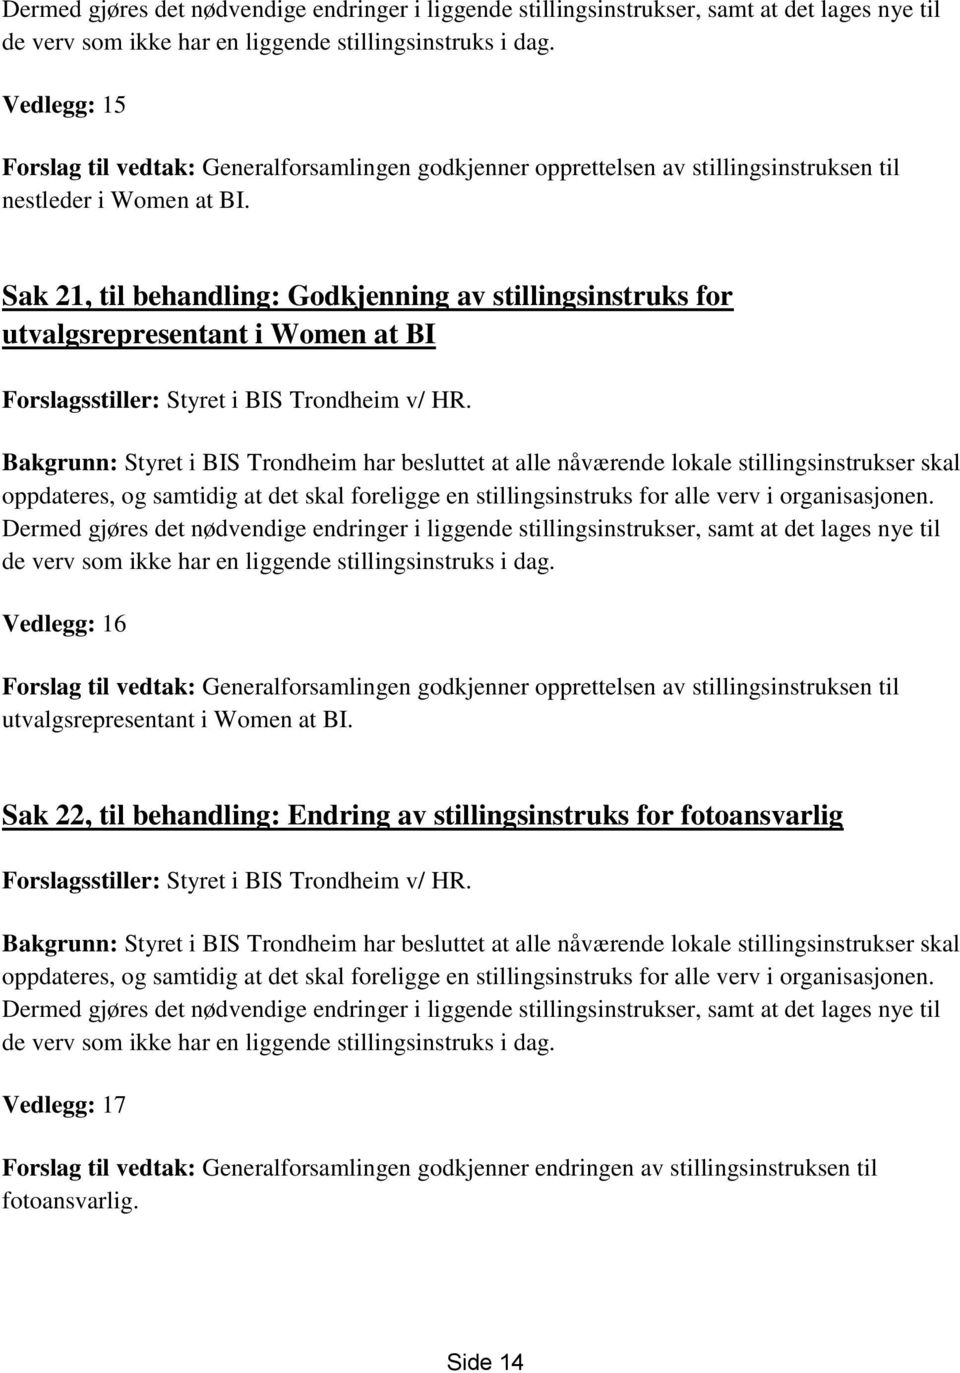 Sak 21, til behandling: Godkjenning av stillingsinstruks for utvalgsrepresentant i Women at BI Forslagsstiller: Styret i BIS Trondheim v/ HR.